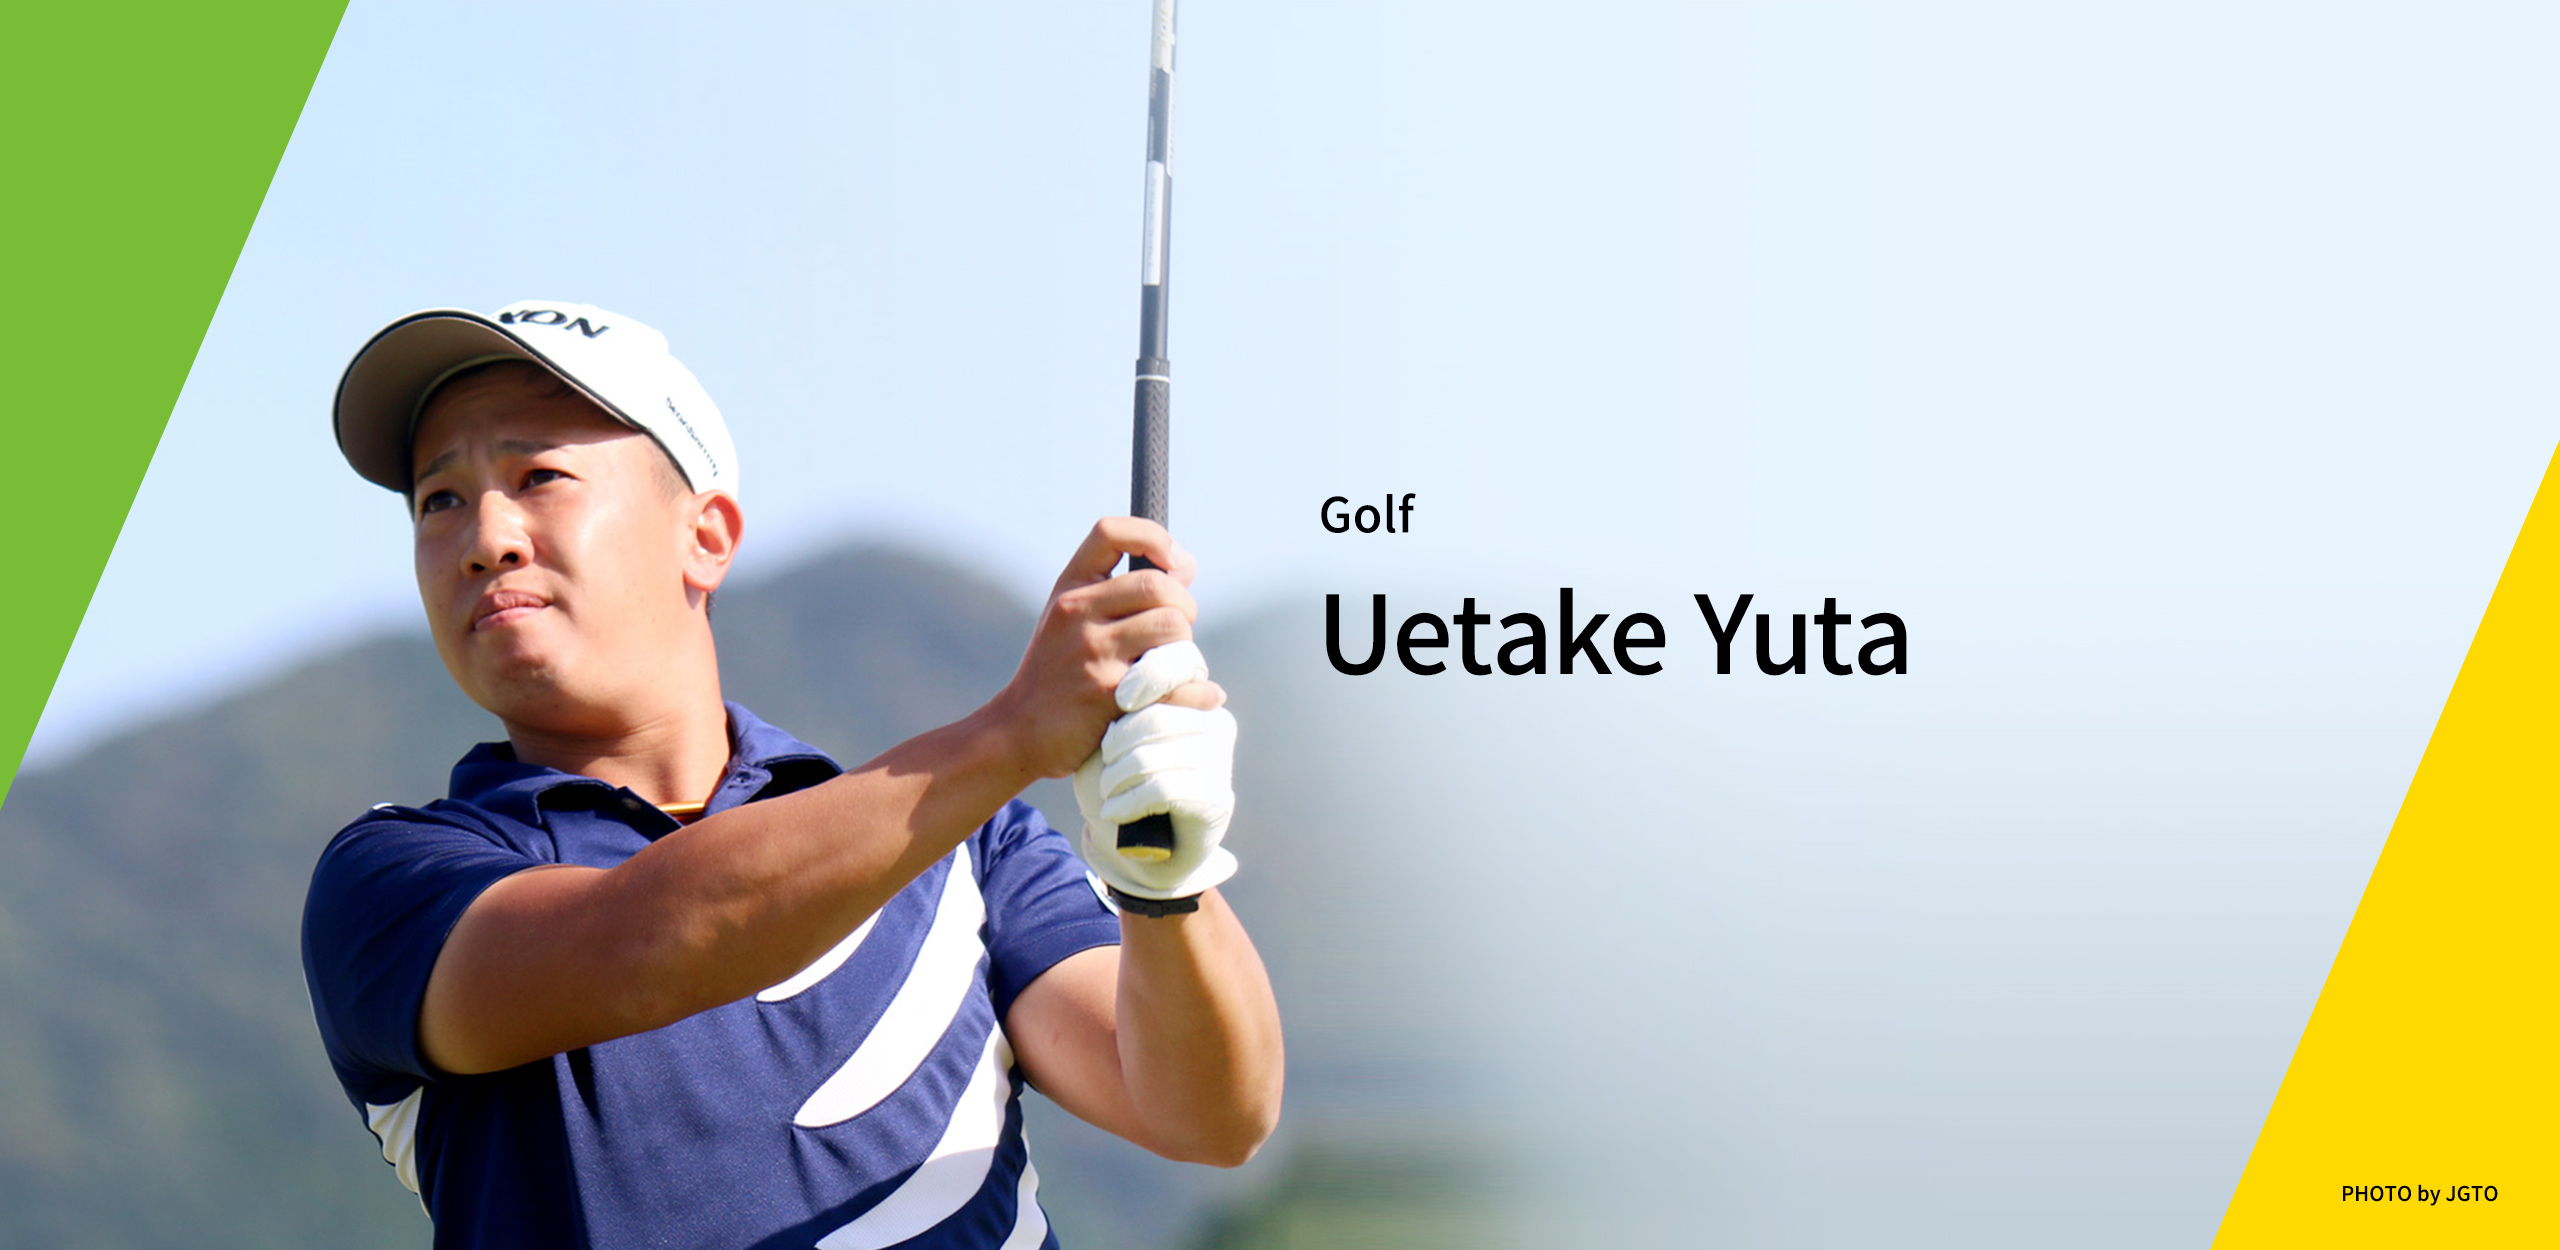 Uetake Yuta